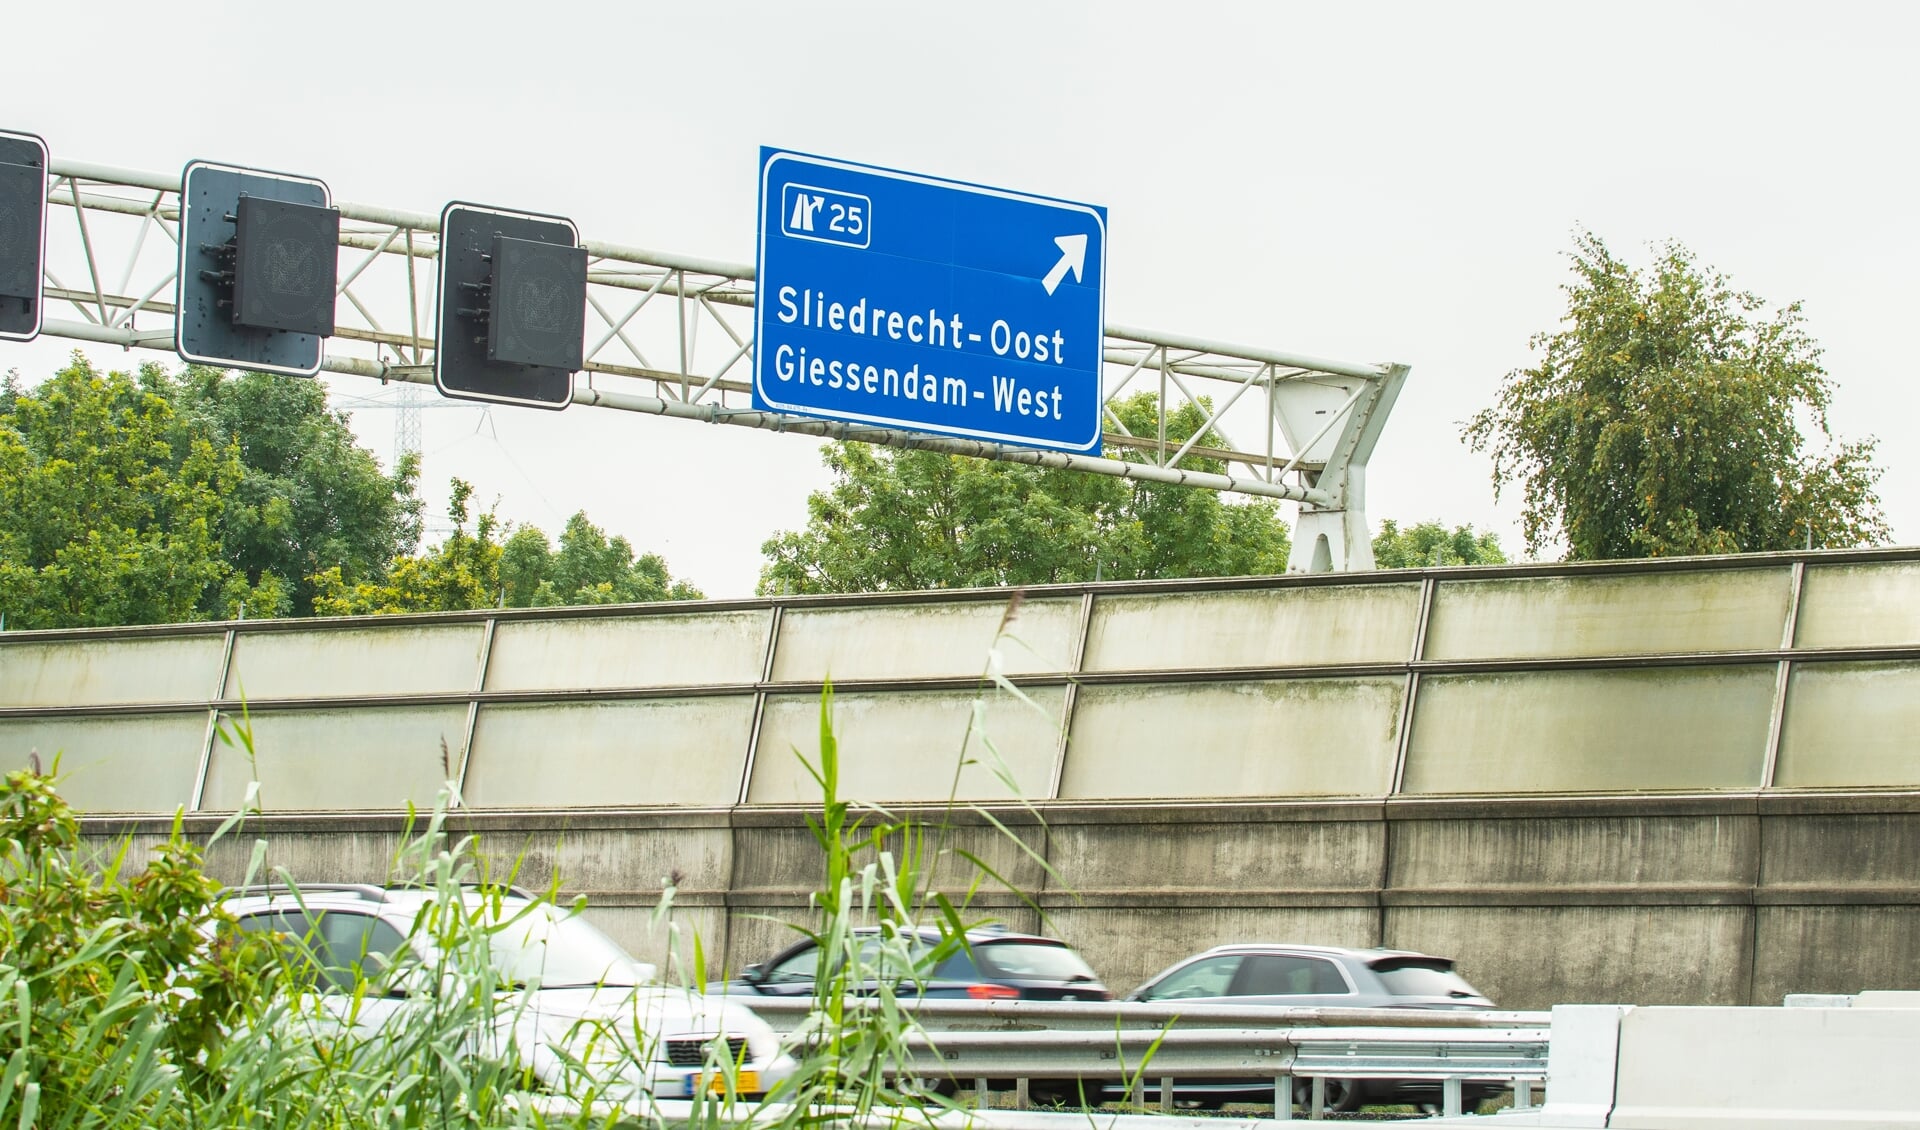 De naam Giessendam-West prijkt prominent op het nieuwe verkeersbord